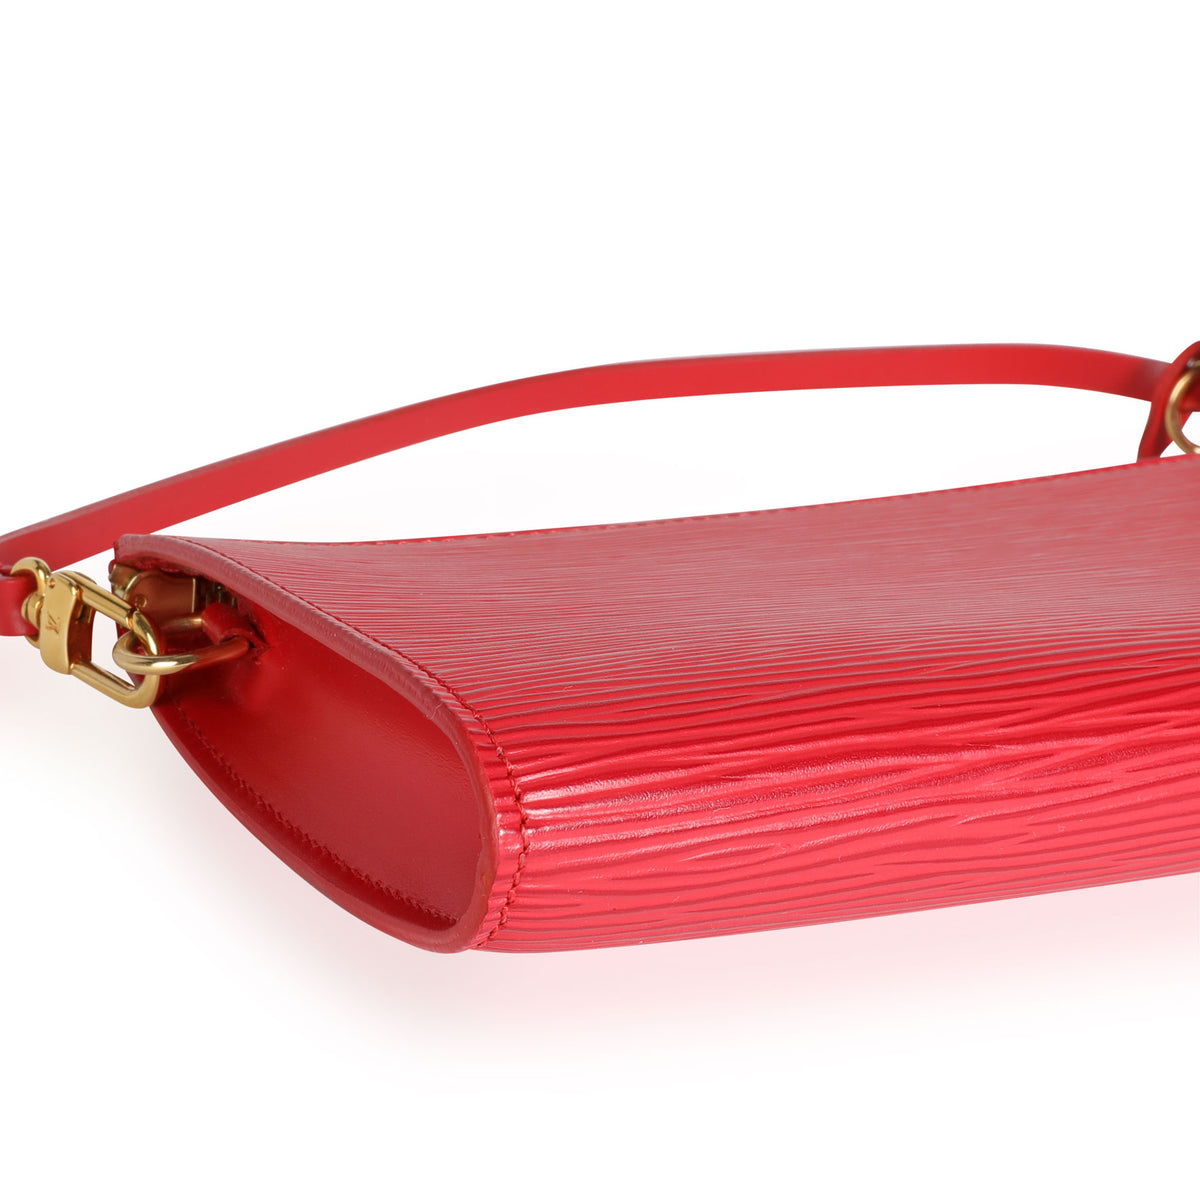 Louis Vuitton Red Epi Leather Pochette Accessoires Louis Vuitton